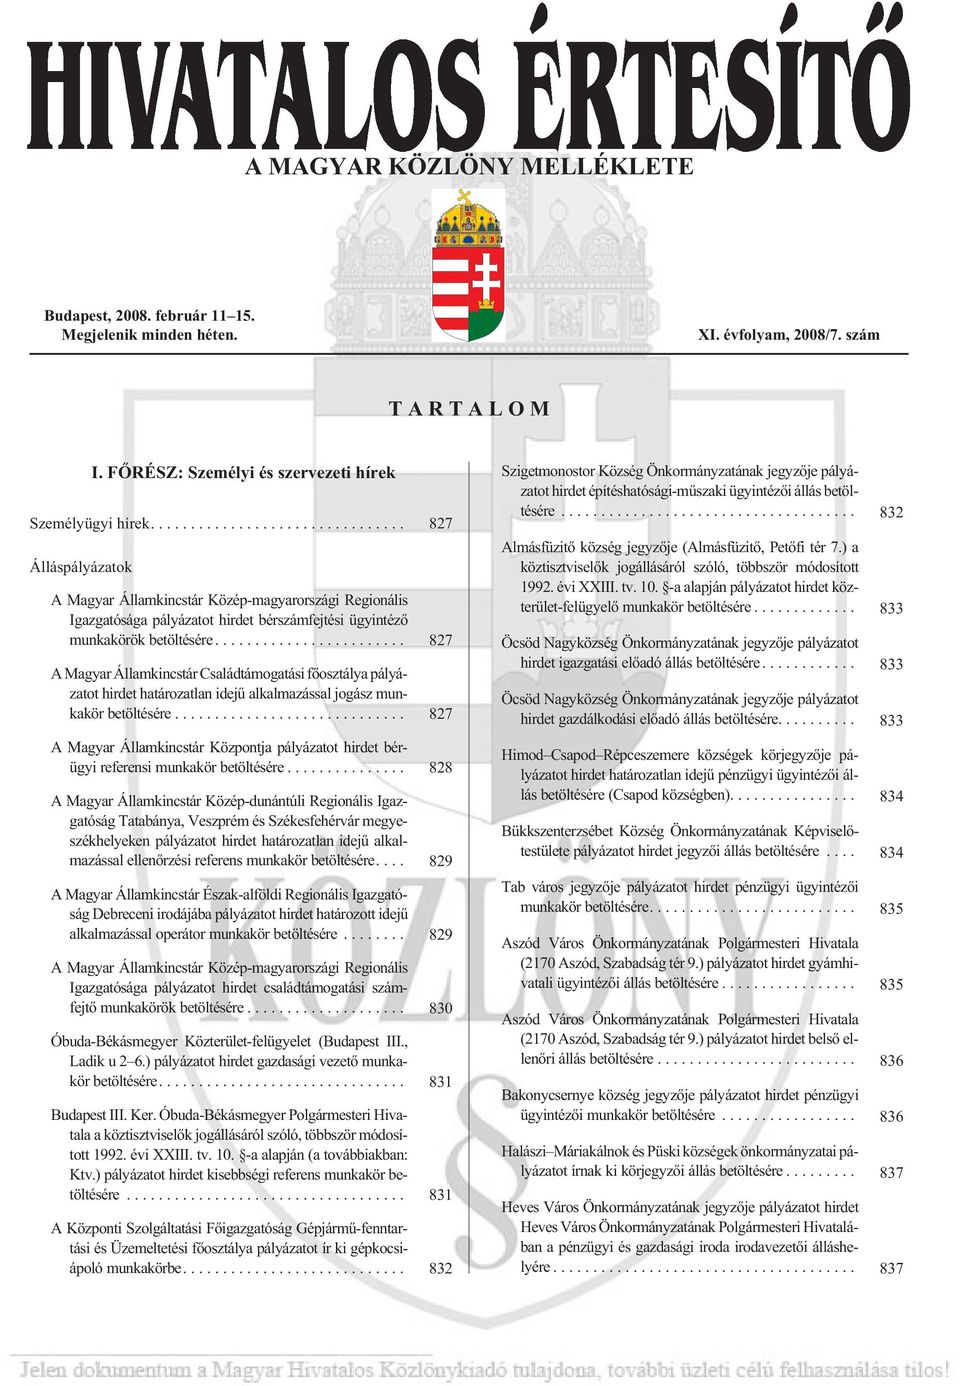 ... 827 Ál lás pá lyá za tok A Magyar Államkincstár Közép-magyarországi Regionális Igazgatósága pályázatot hirdet bérszámfejtési ügyintézõ munkakörök betöltésére.